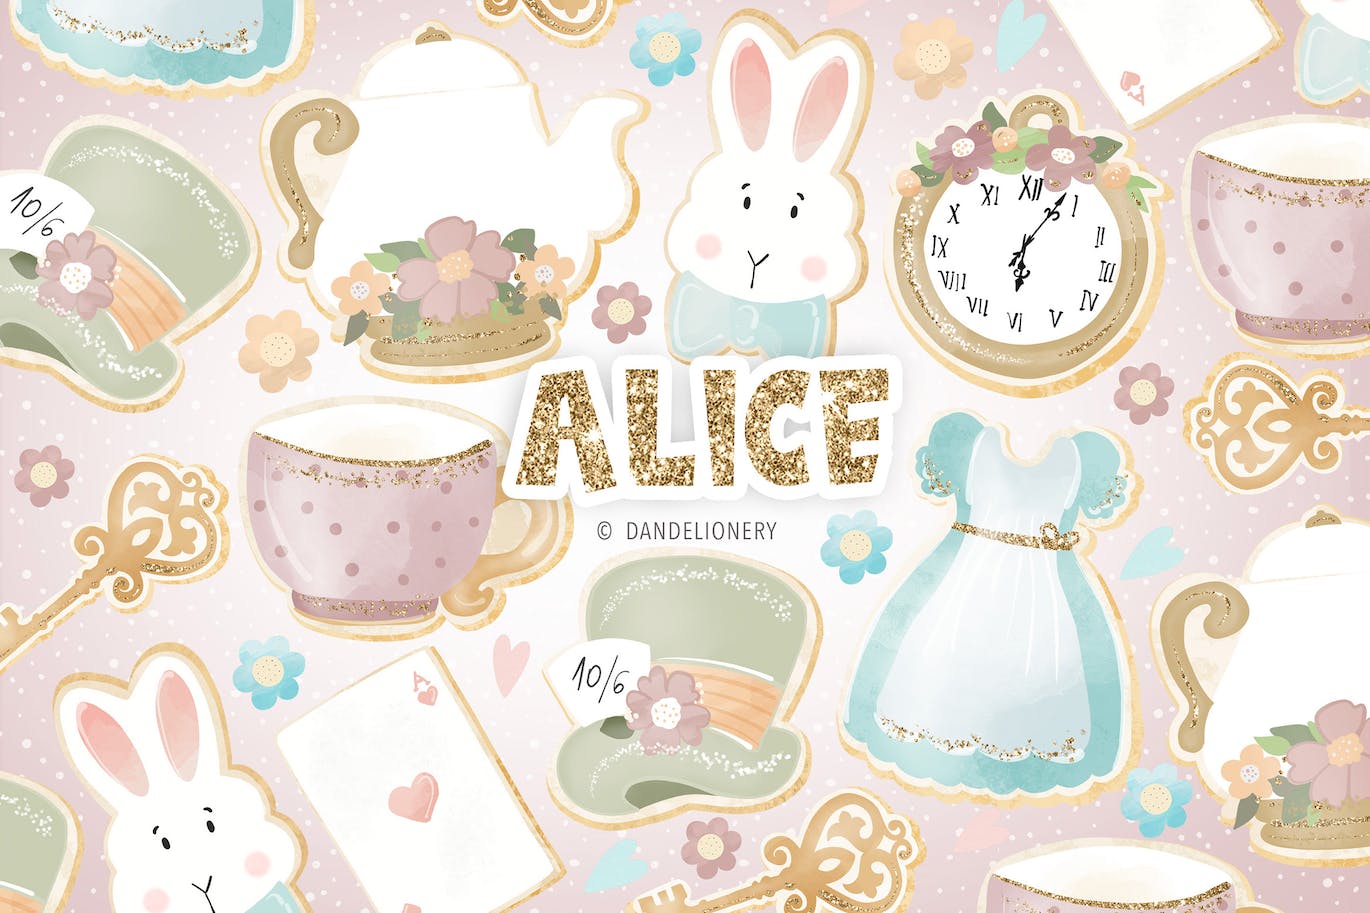 爱丽丝梦游仙境设计水彩插画素材 Alice design-1